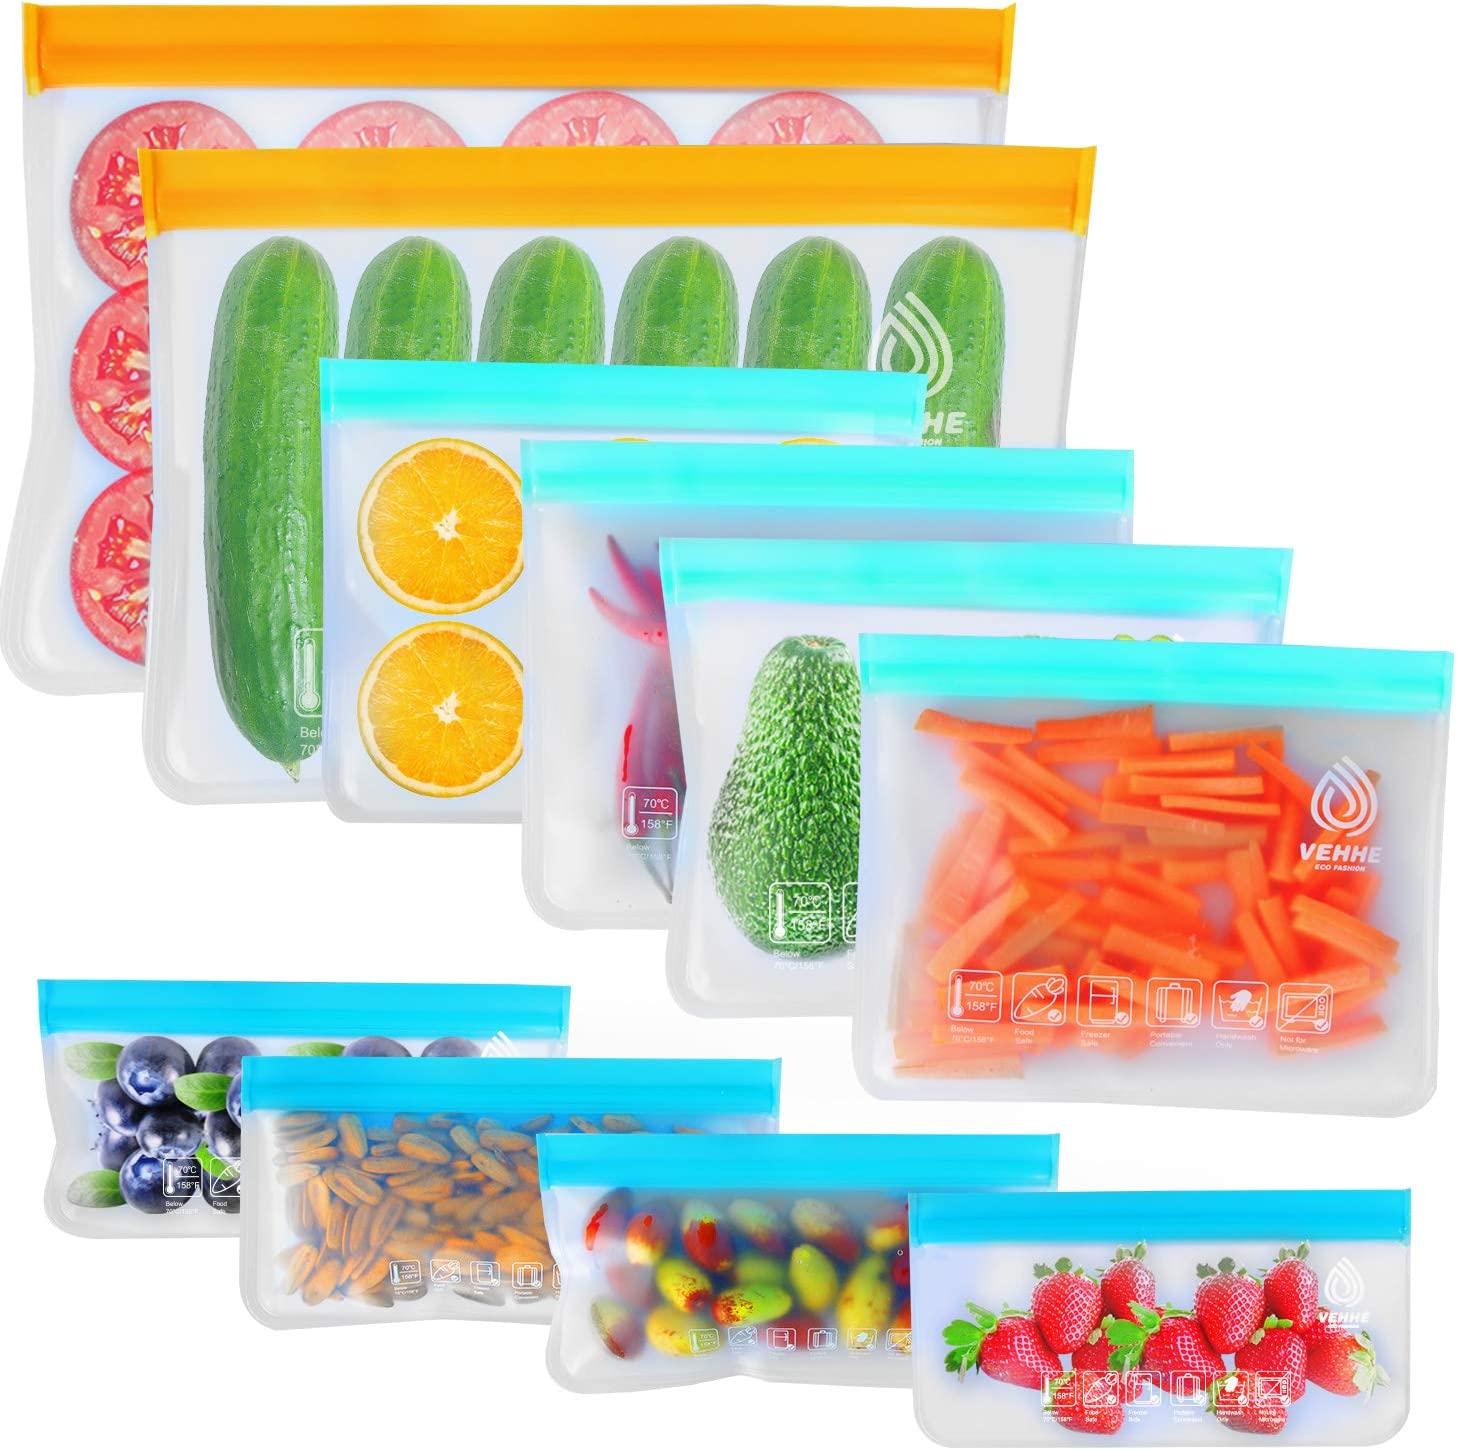 VEHHE Leak Resistant Silicone Food Storage Bags, 10-Pack